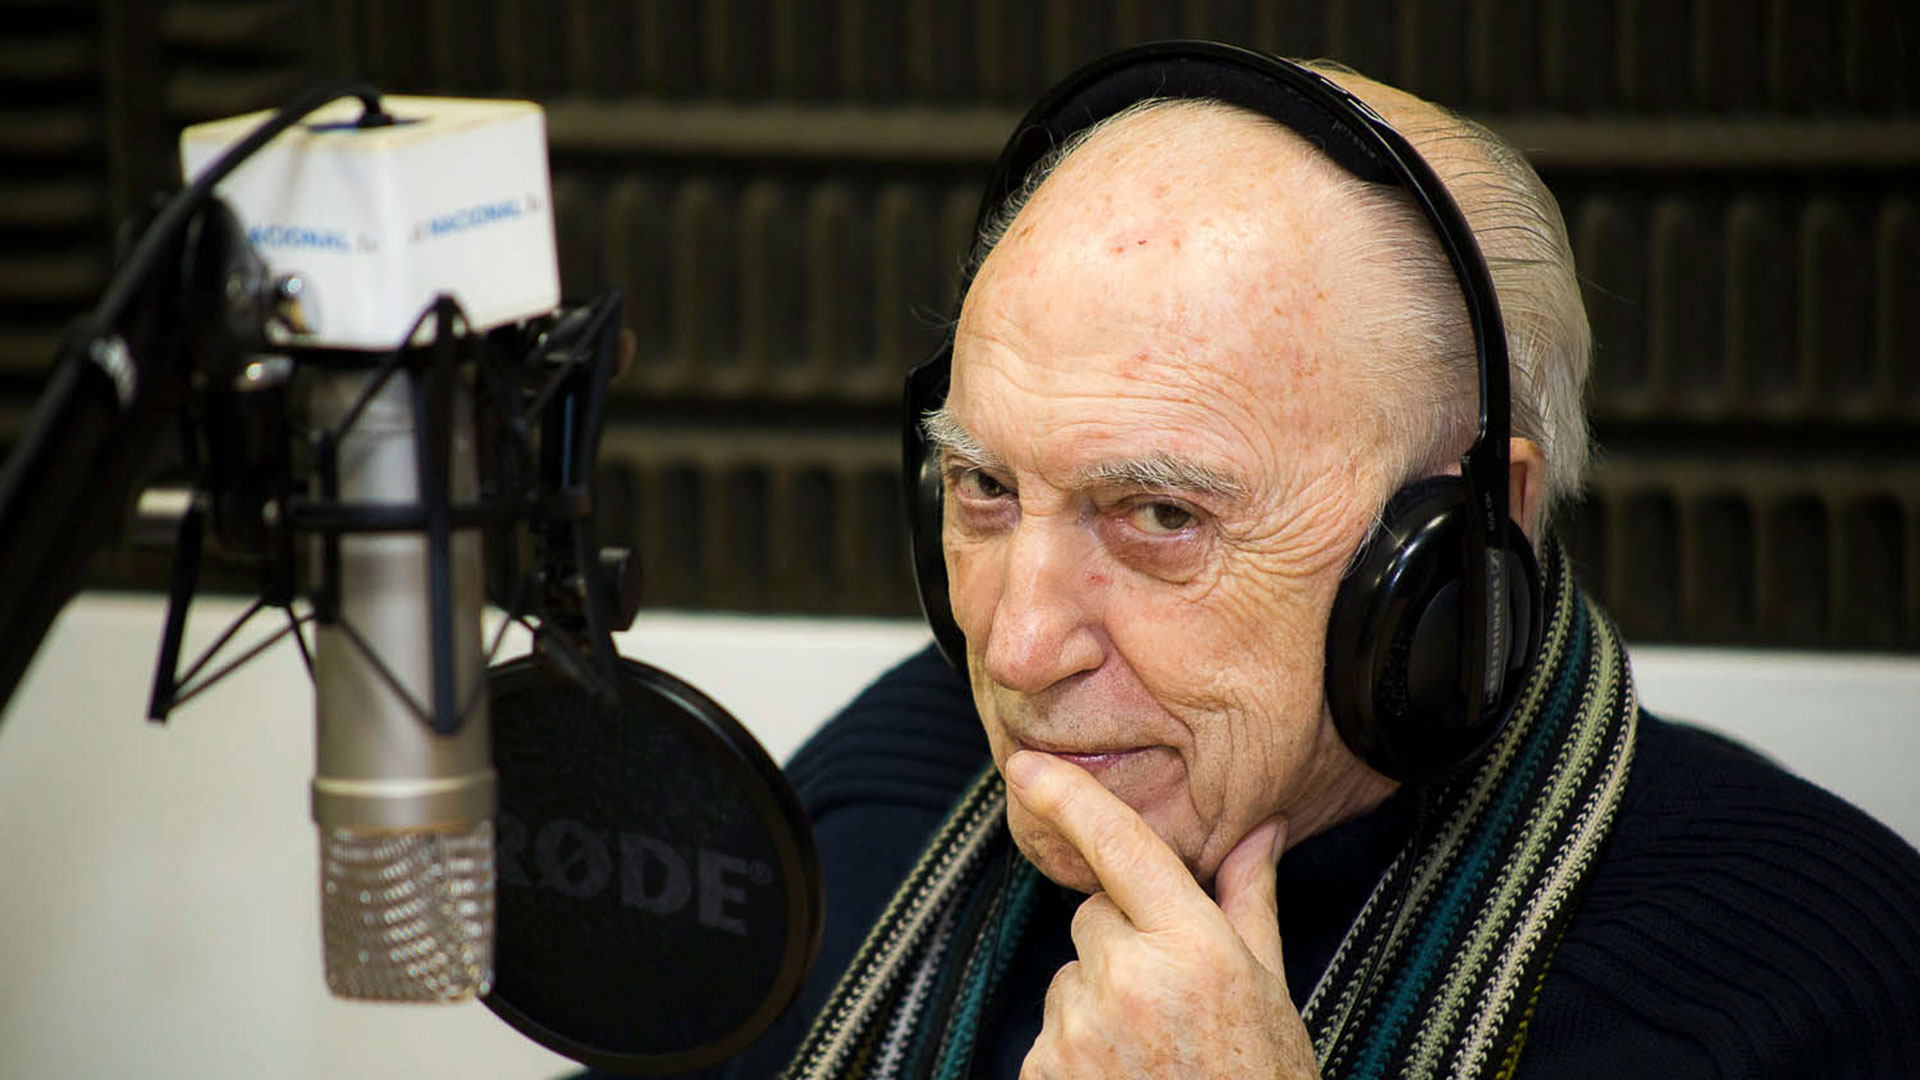  Jorge “Cacho” Fontana, 5 de julio de 2022, 90 años. Locutor, conductor y animador. Su voz artística marcó rumbo y se transformó en emblemática (Archivo: Radio Nacional)